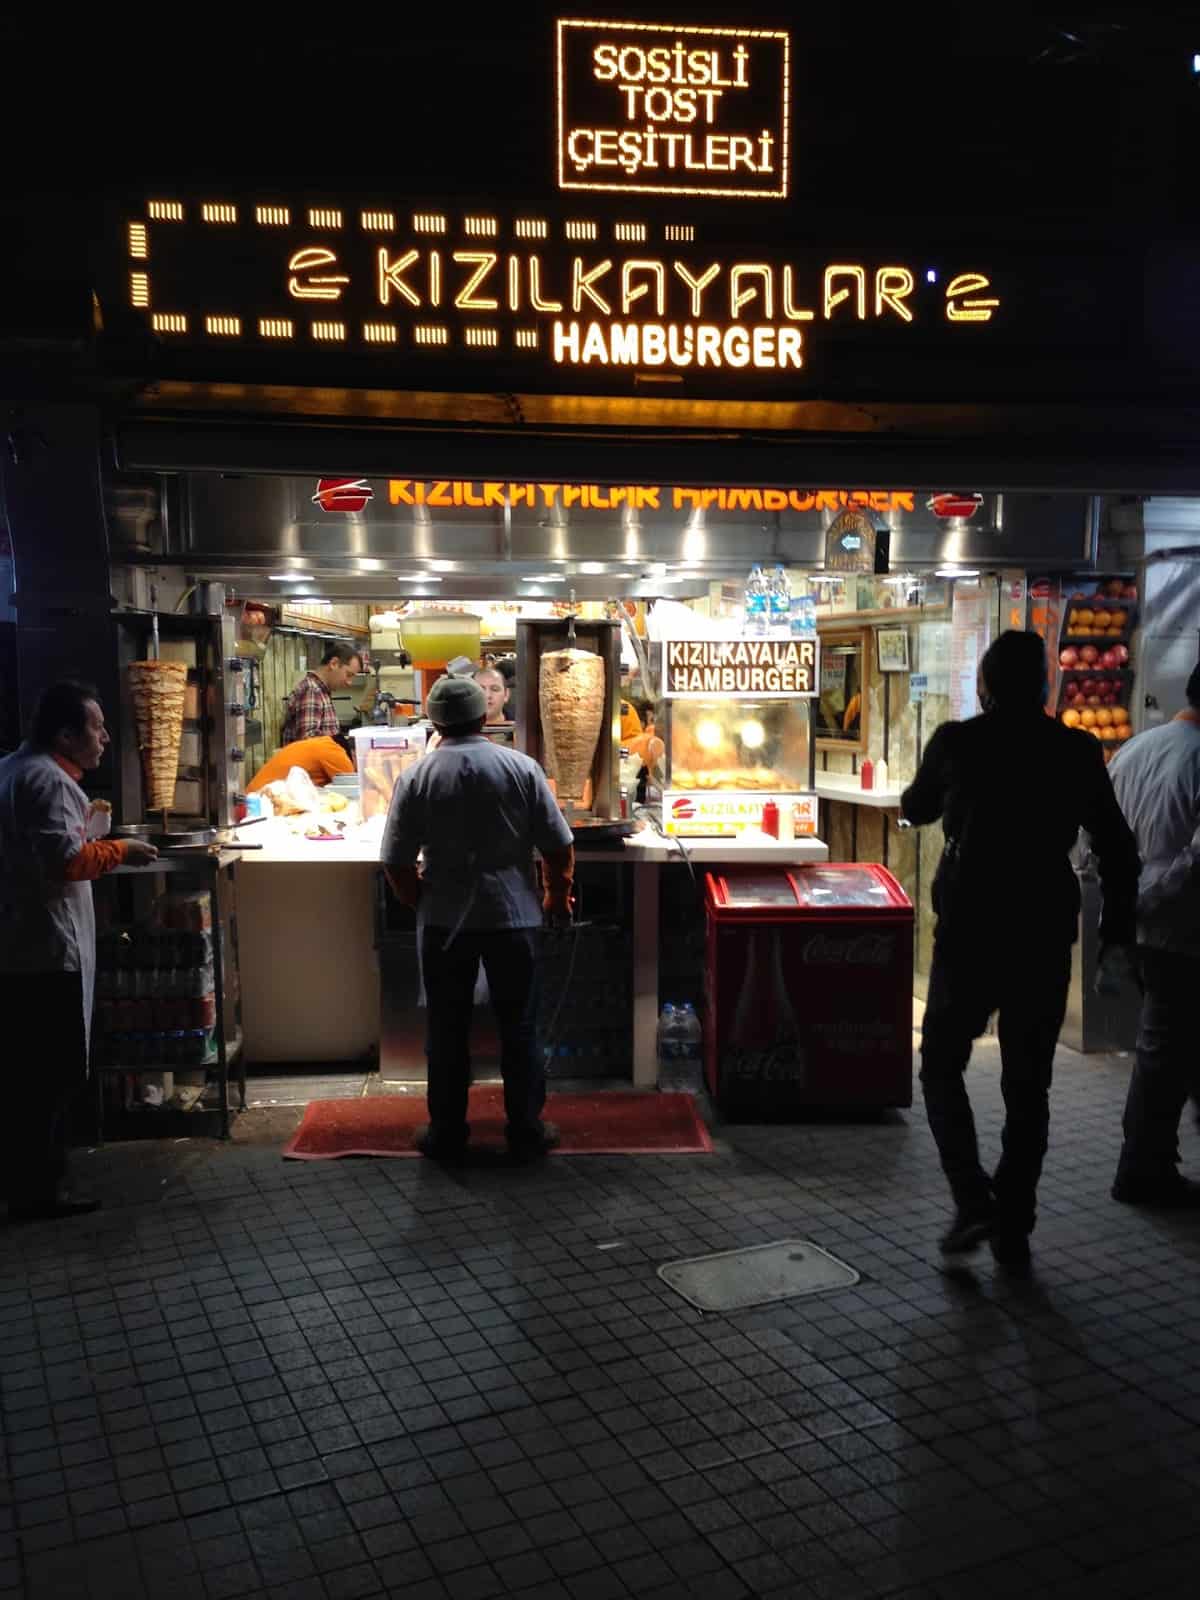 Kızılkayalar at Taksim Meydanı in İstanbul, Turkey